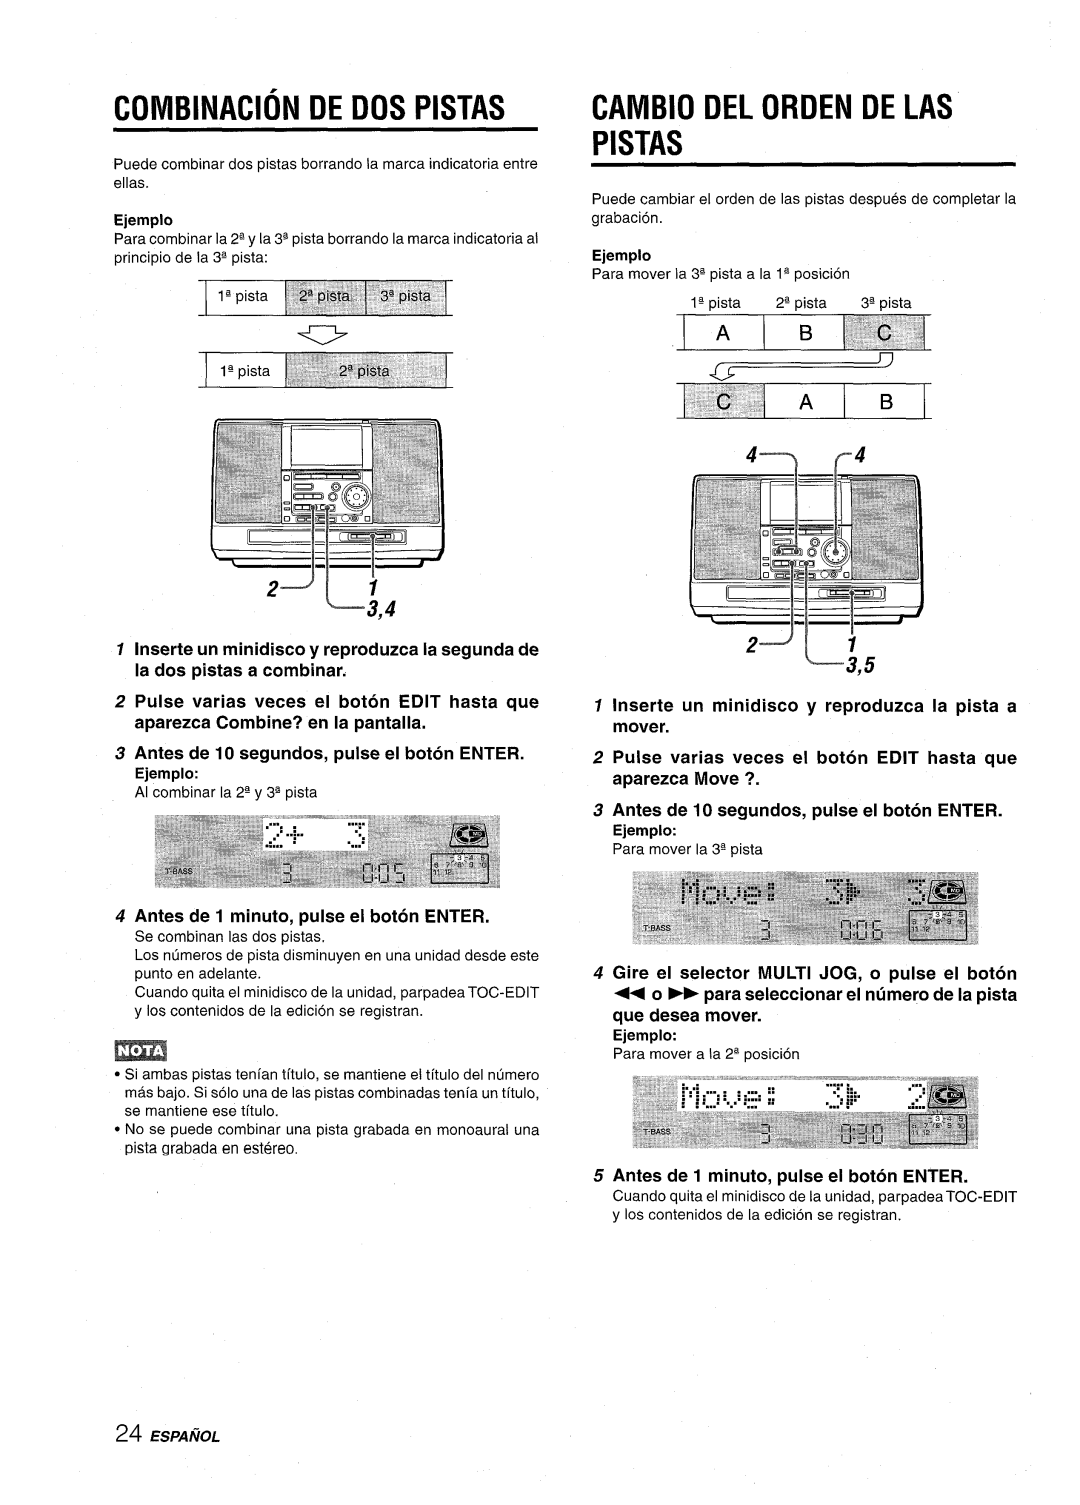 Aiwa CSD-MD50 manual Combination De Dos Pistas, Cambio Del Orden De Las Pistas, Ejemplo Para mover a la 24 position 